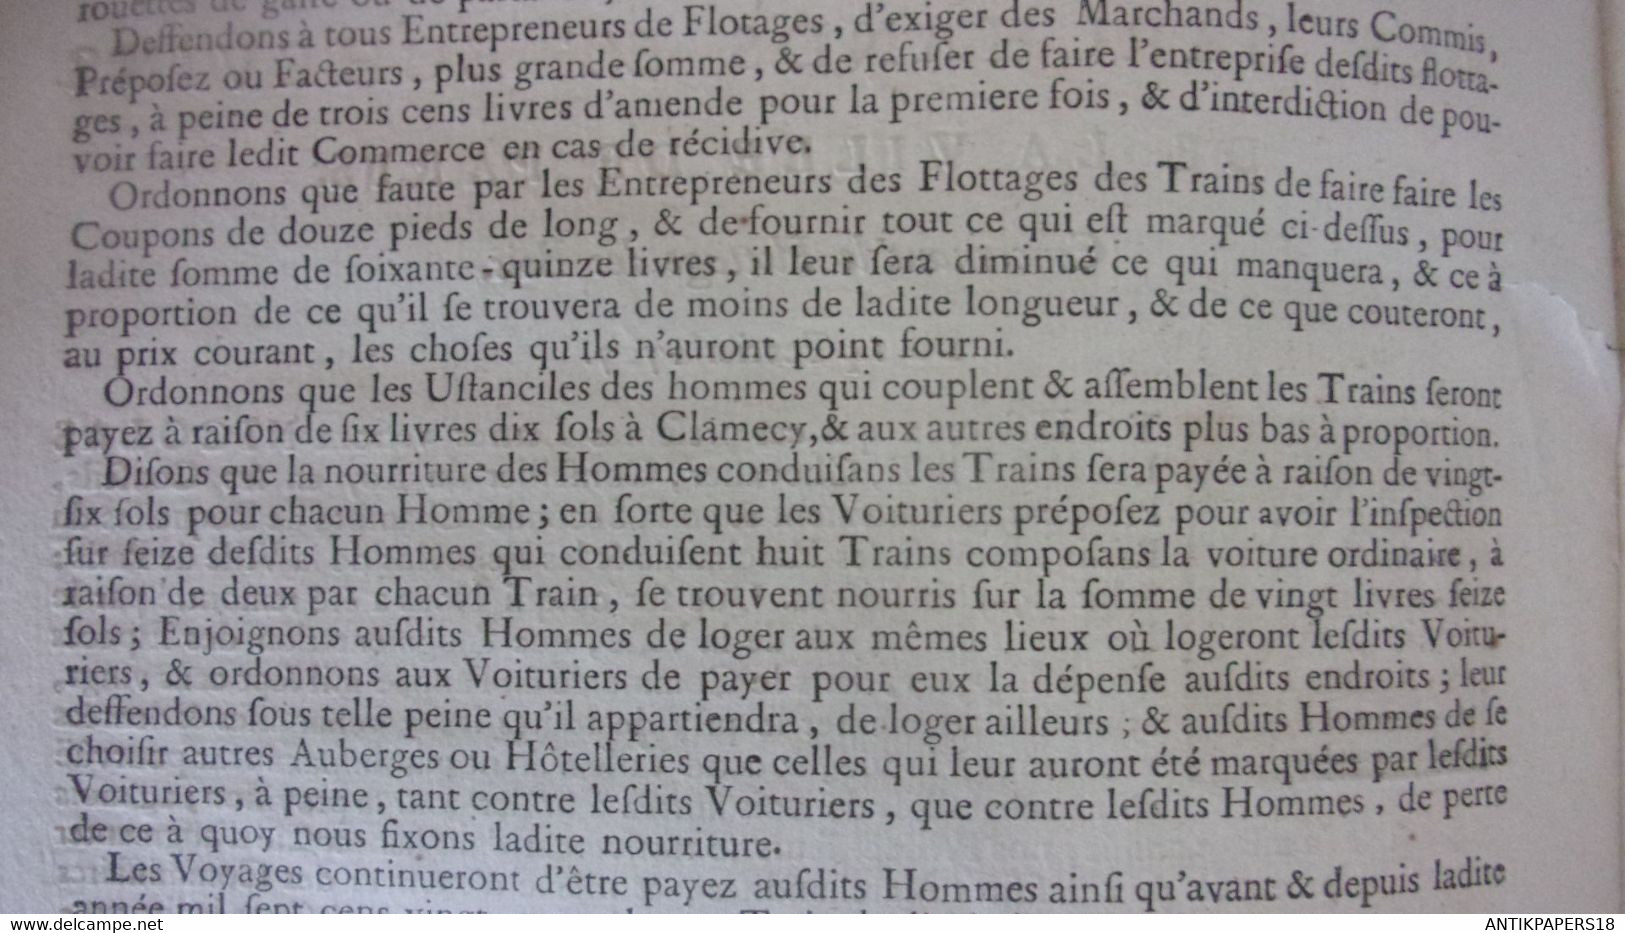 1727 FLOTTAGE DU BOIS CLAMECY NIEVRE YONNE LUCY COLANGE ARCY CURE BEFFY REGNY VERMANTON CRAVANT... DE PAR LES PREVOST